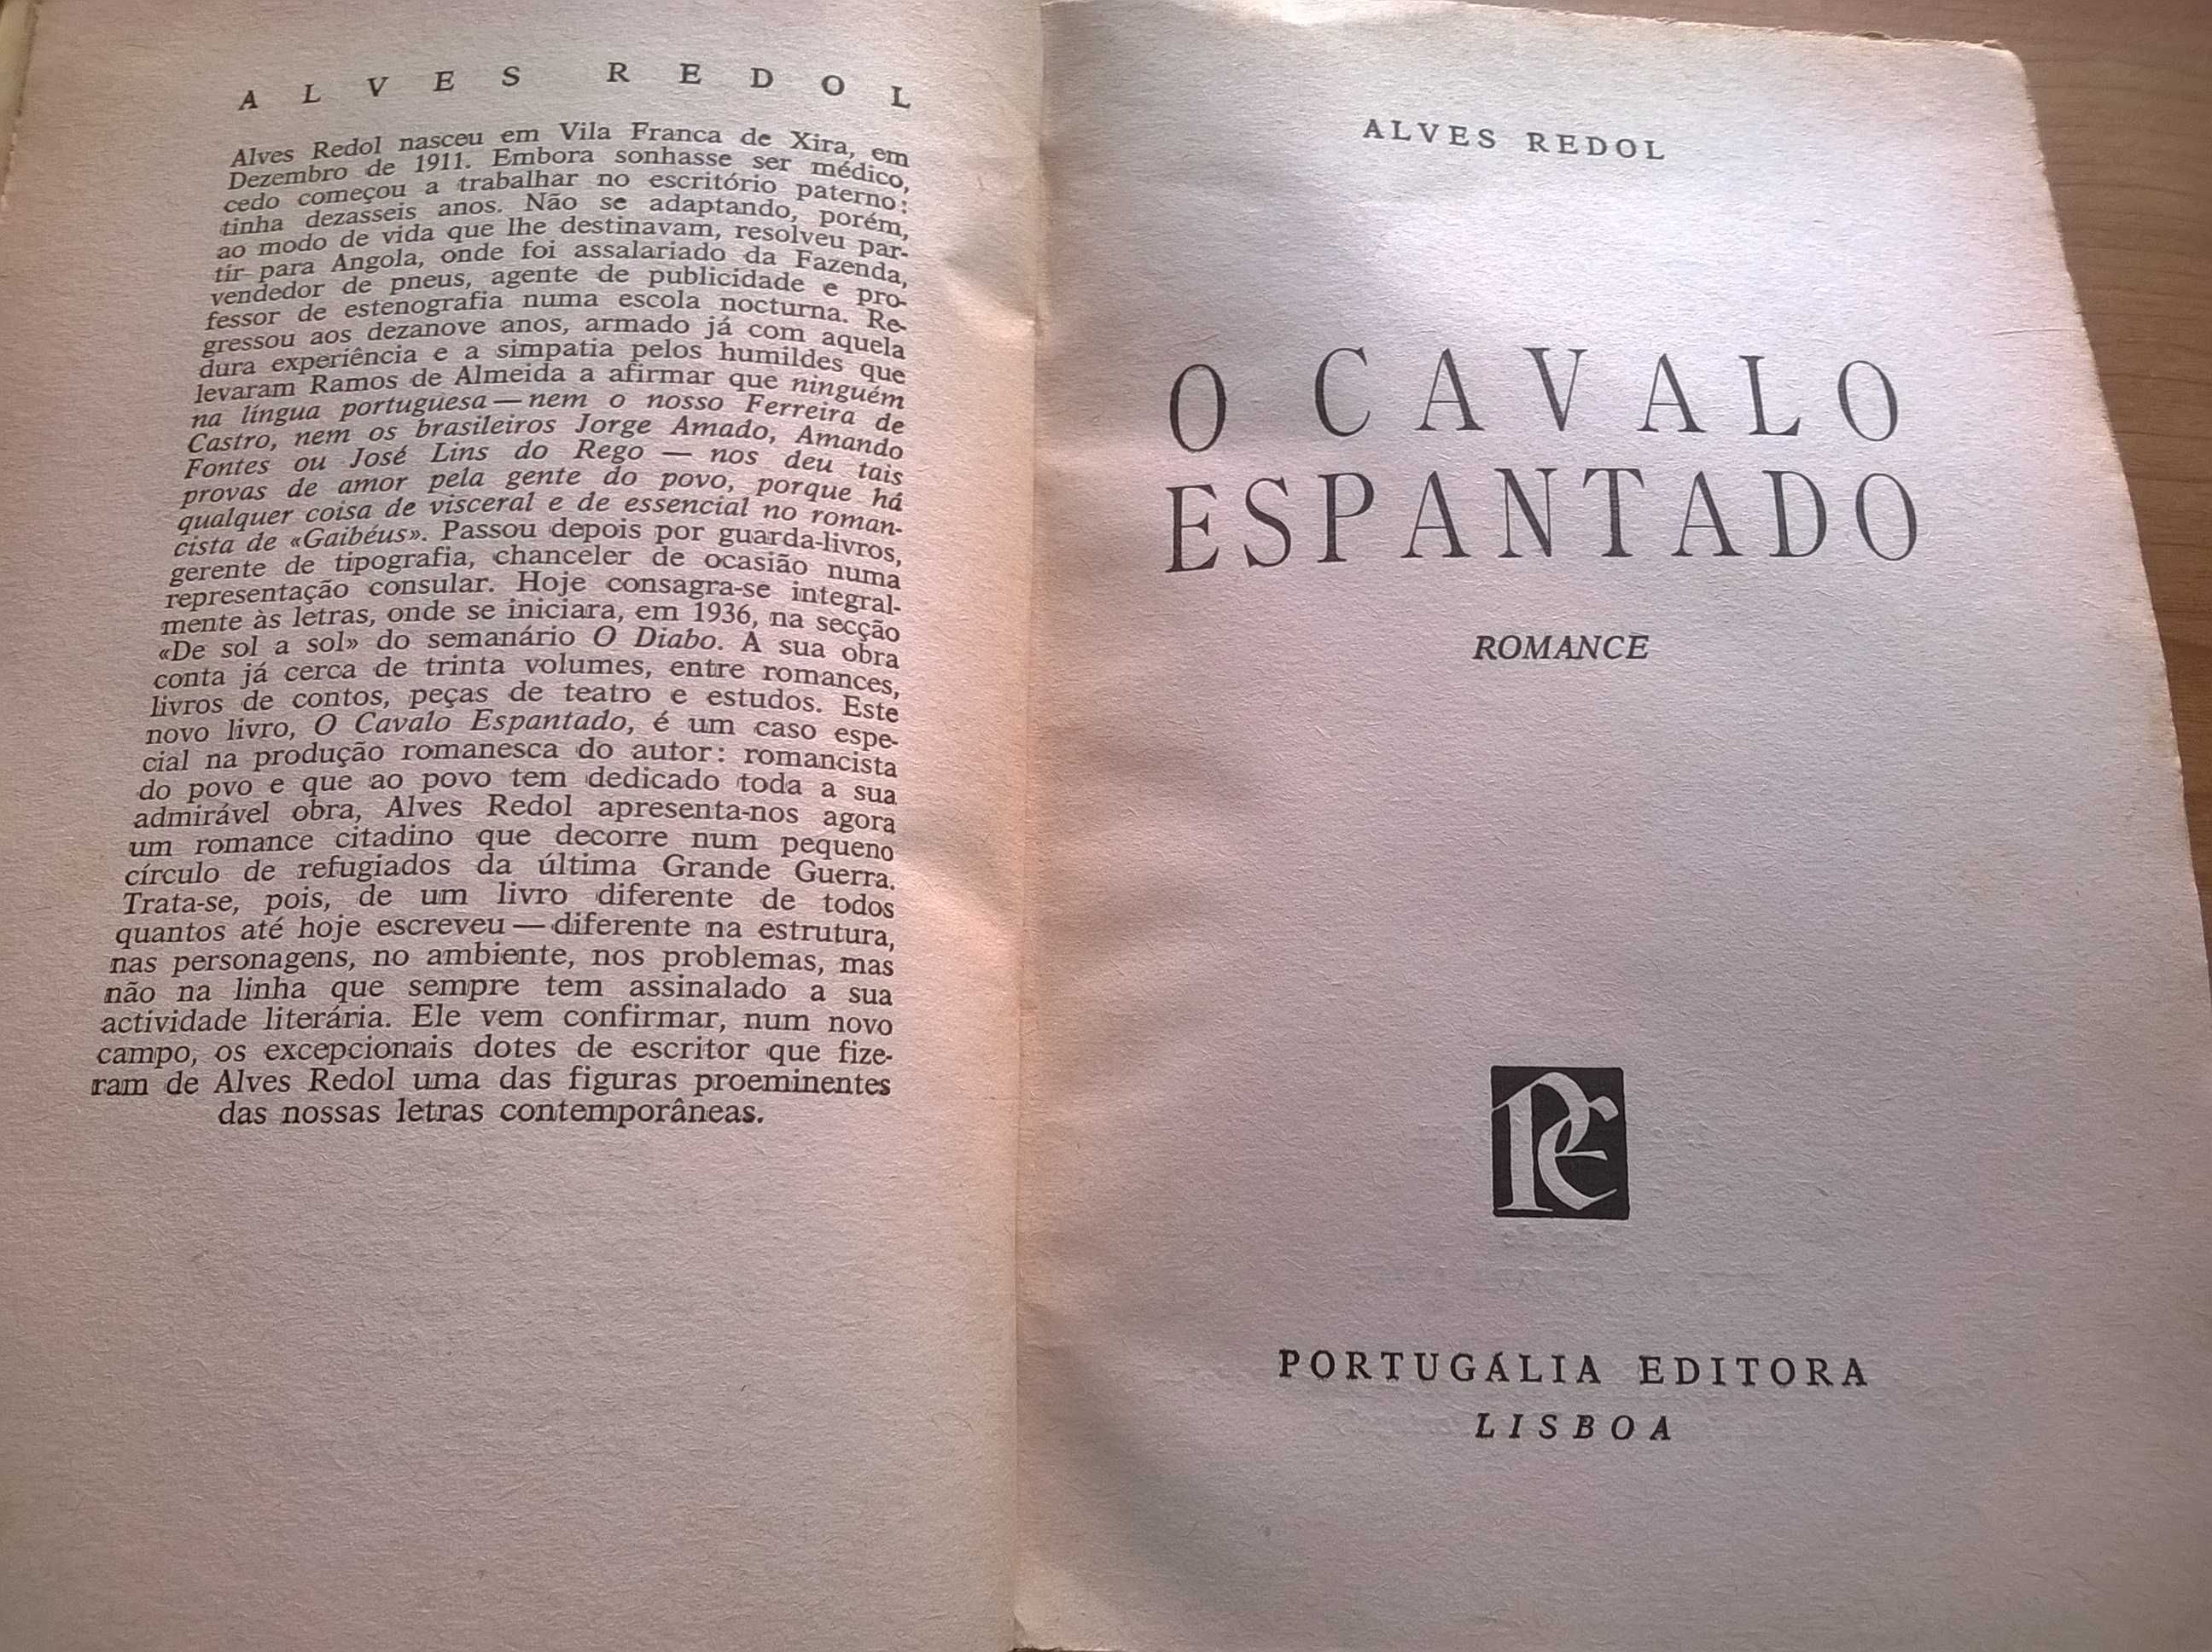 O Cavalo Espantado (1.ª ed.) - Alves Redol (portes grátis)